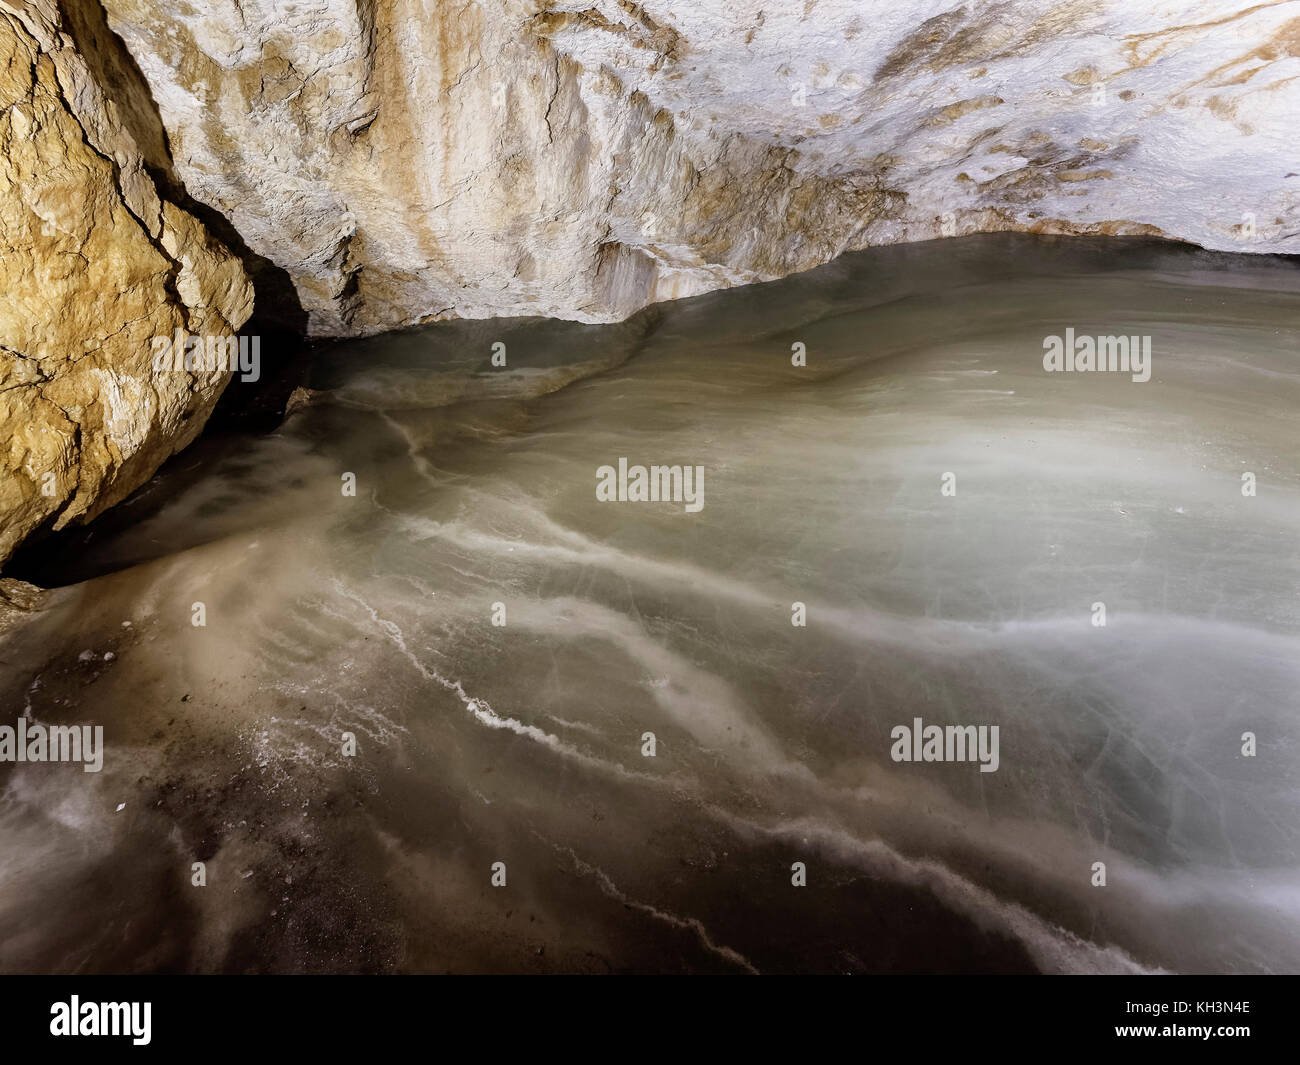 Dobsina ice cave,Dobsinska ľadova jaskyna iin National park Slovakian paradise, Kosicky kraj, Slovakia, Europe, UNESCO-world heritage Stock Photo